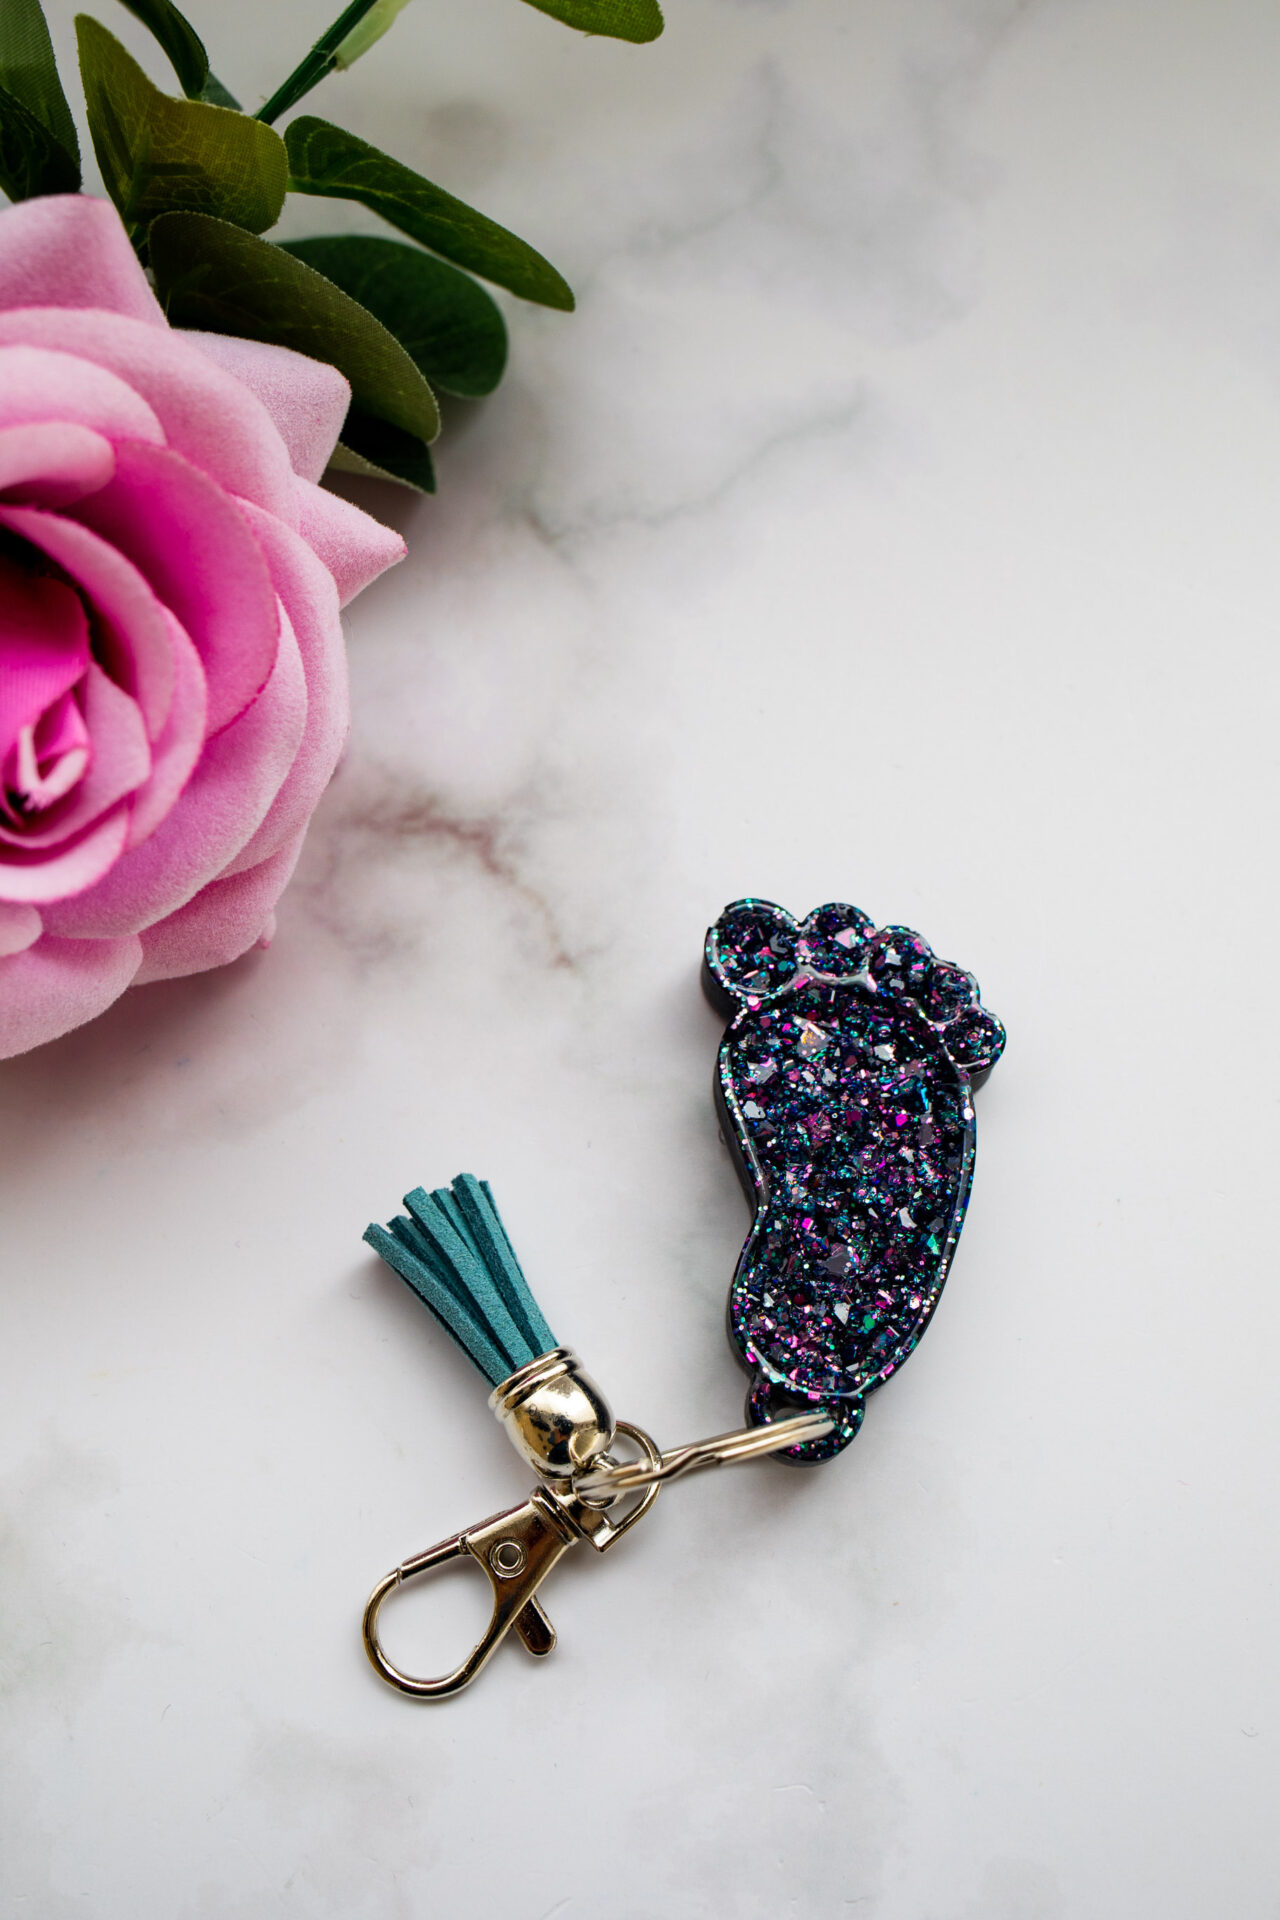 Porte clé pied bébé effet diamant noir paillette - Boutique en ligne d'idées cadeau et de décoration pour la fête des mères ou pour un anniversaire